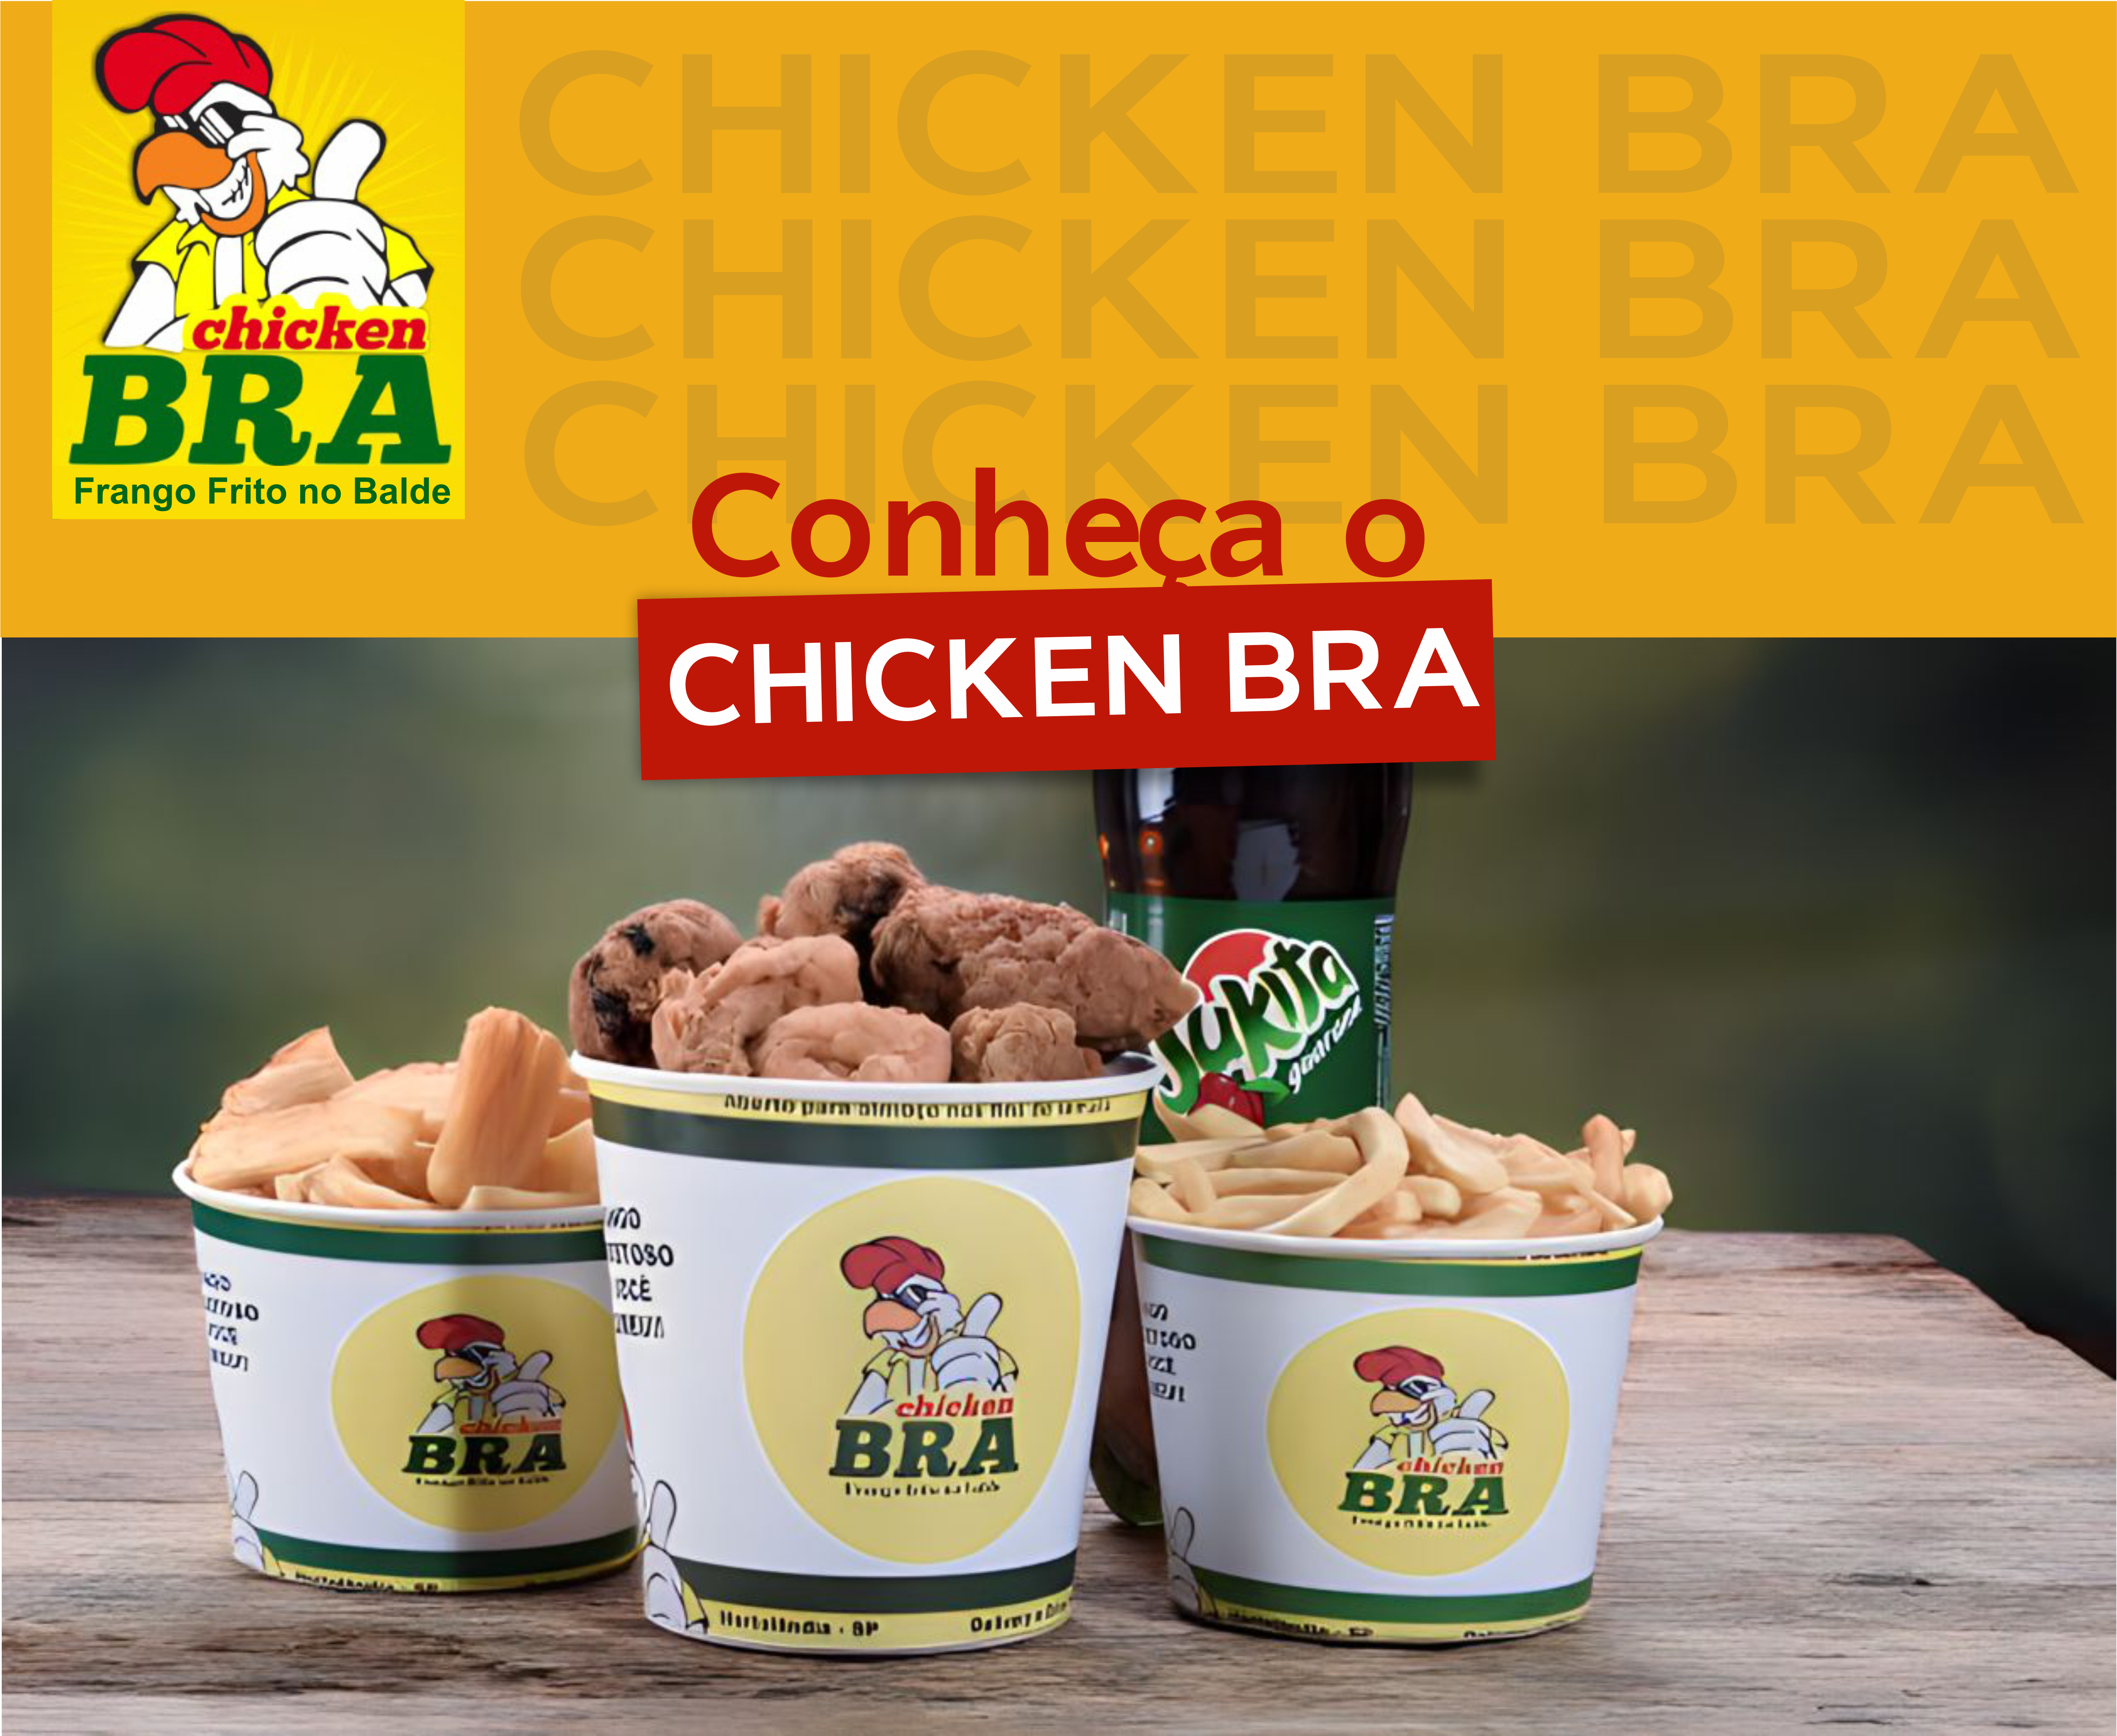 ChickenBra – Frango frito no balde